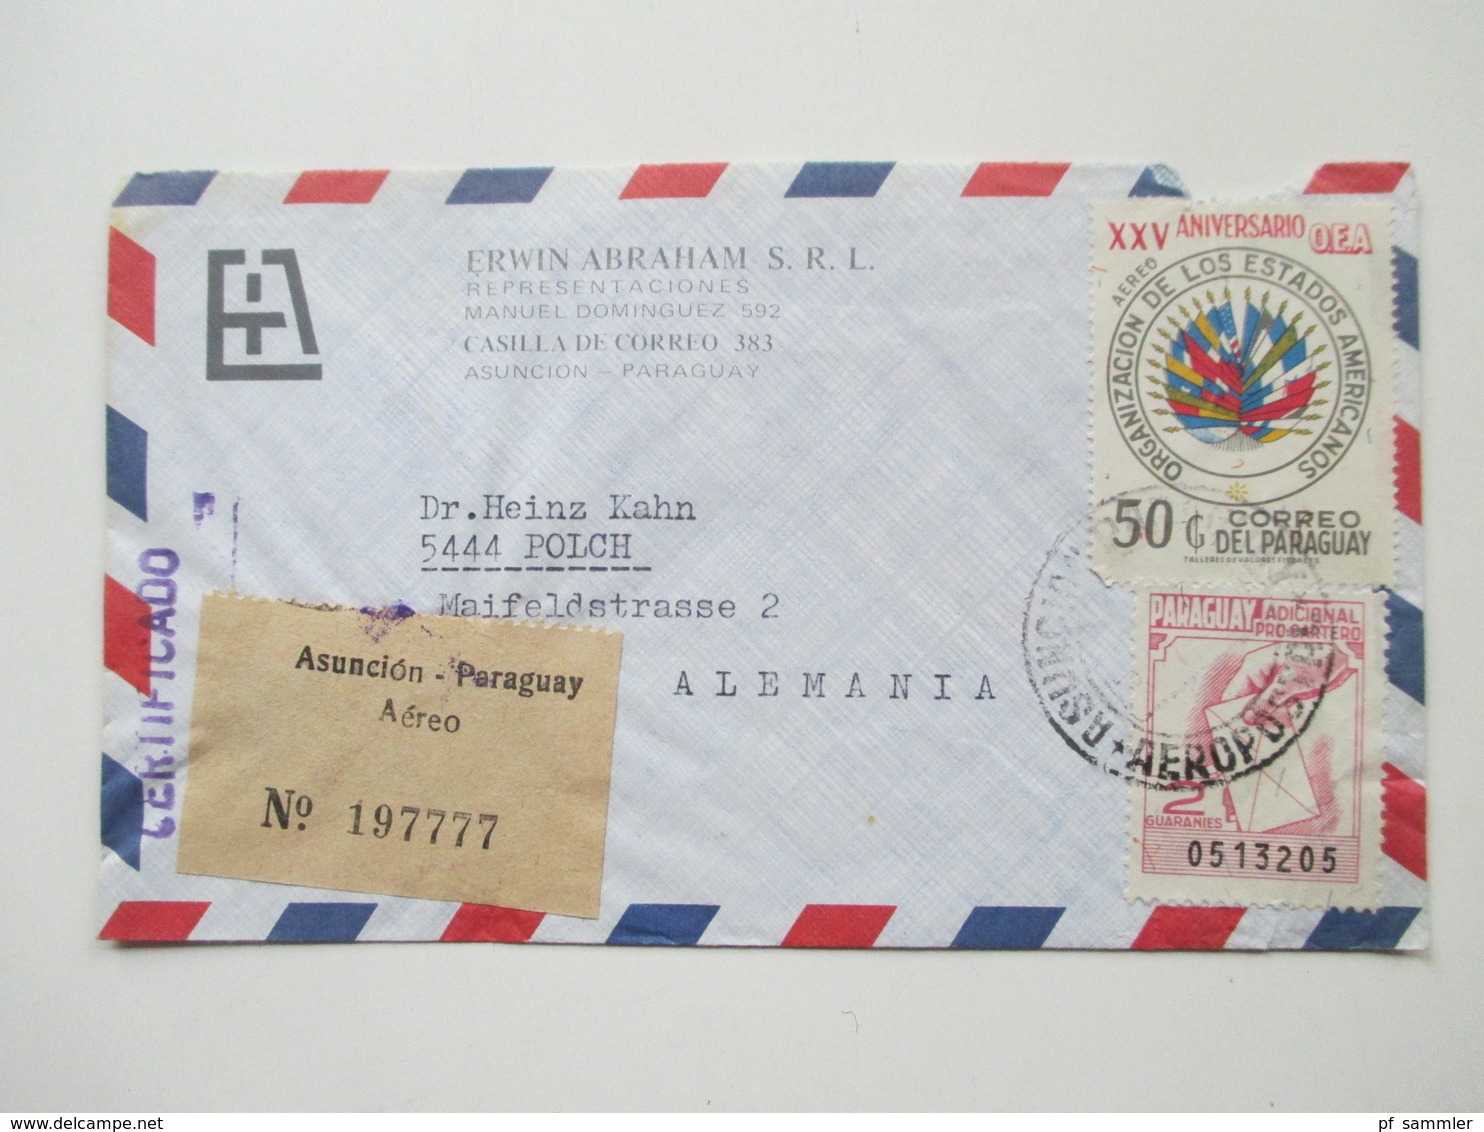 Paraguay ca. 1972 - 82 Korrespondenz 25 Luftpost Briefe. einige mit Inhalt! Certificado. Erwin Abraham S.R.L.